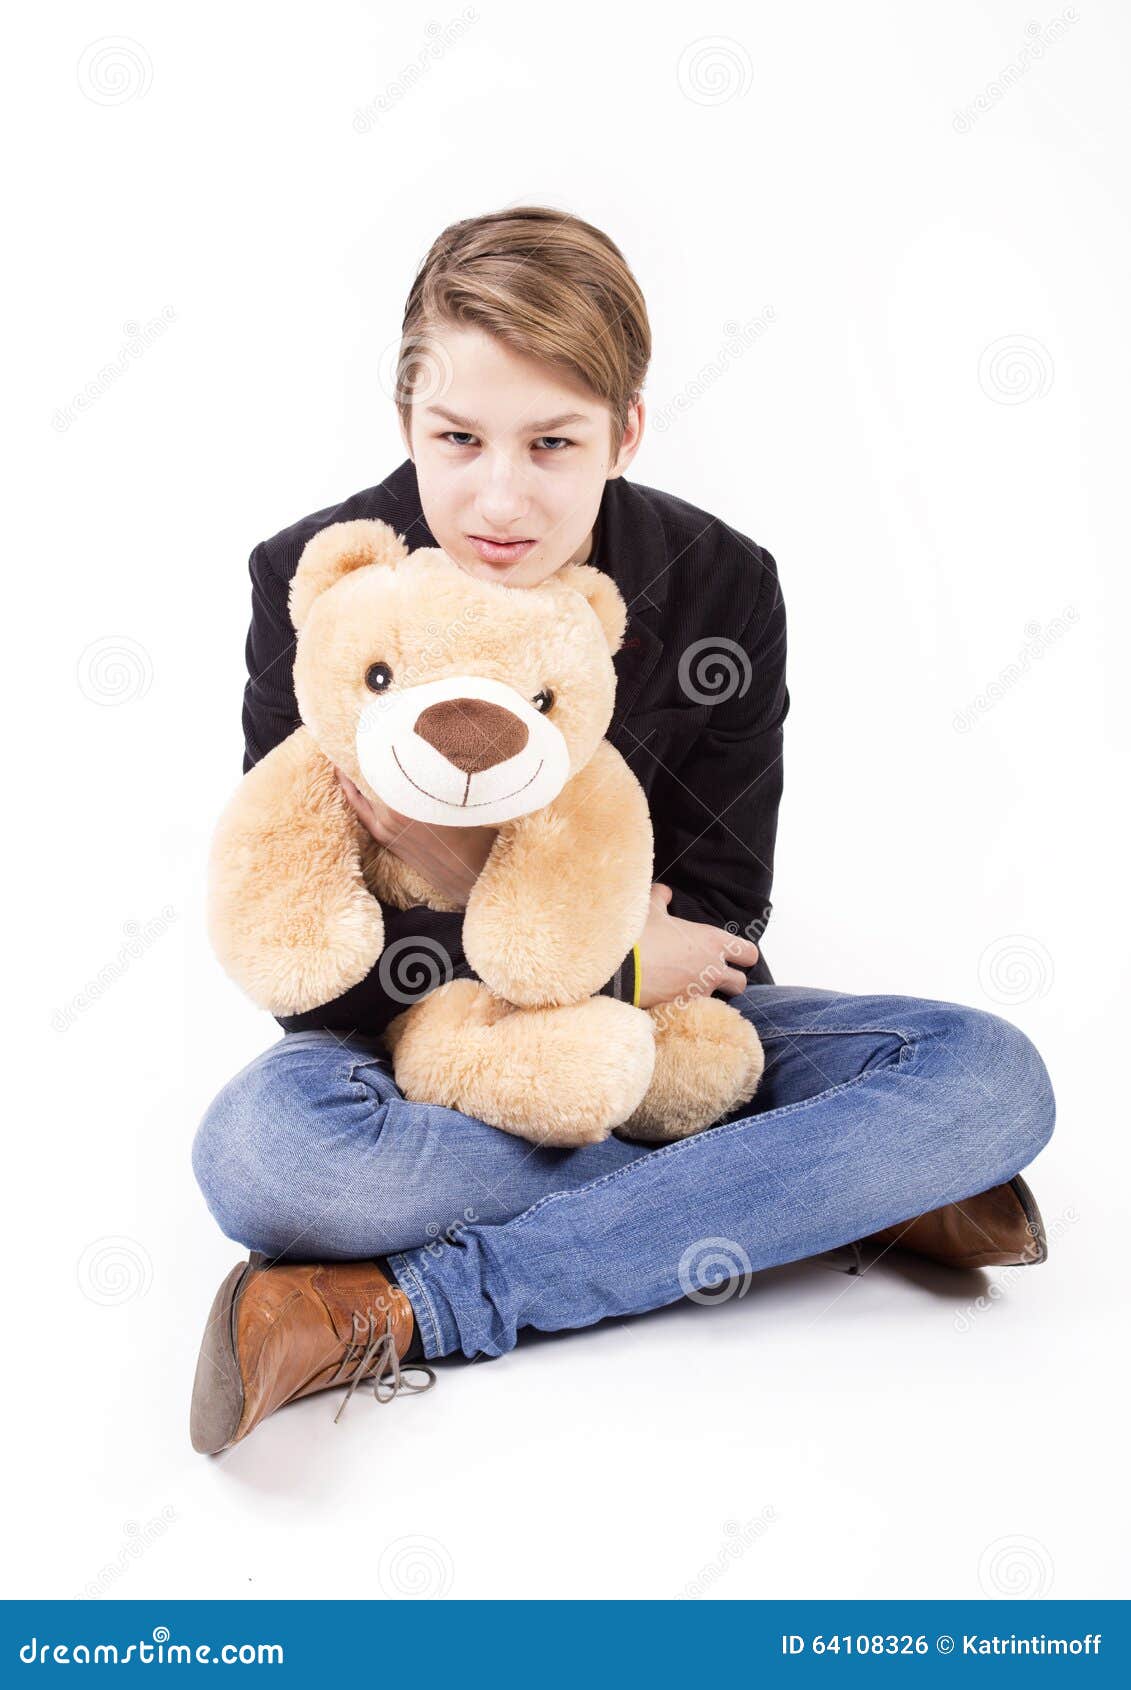 Teen with teddy bear